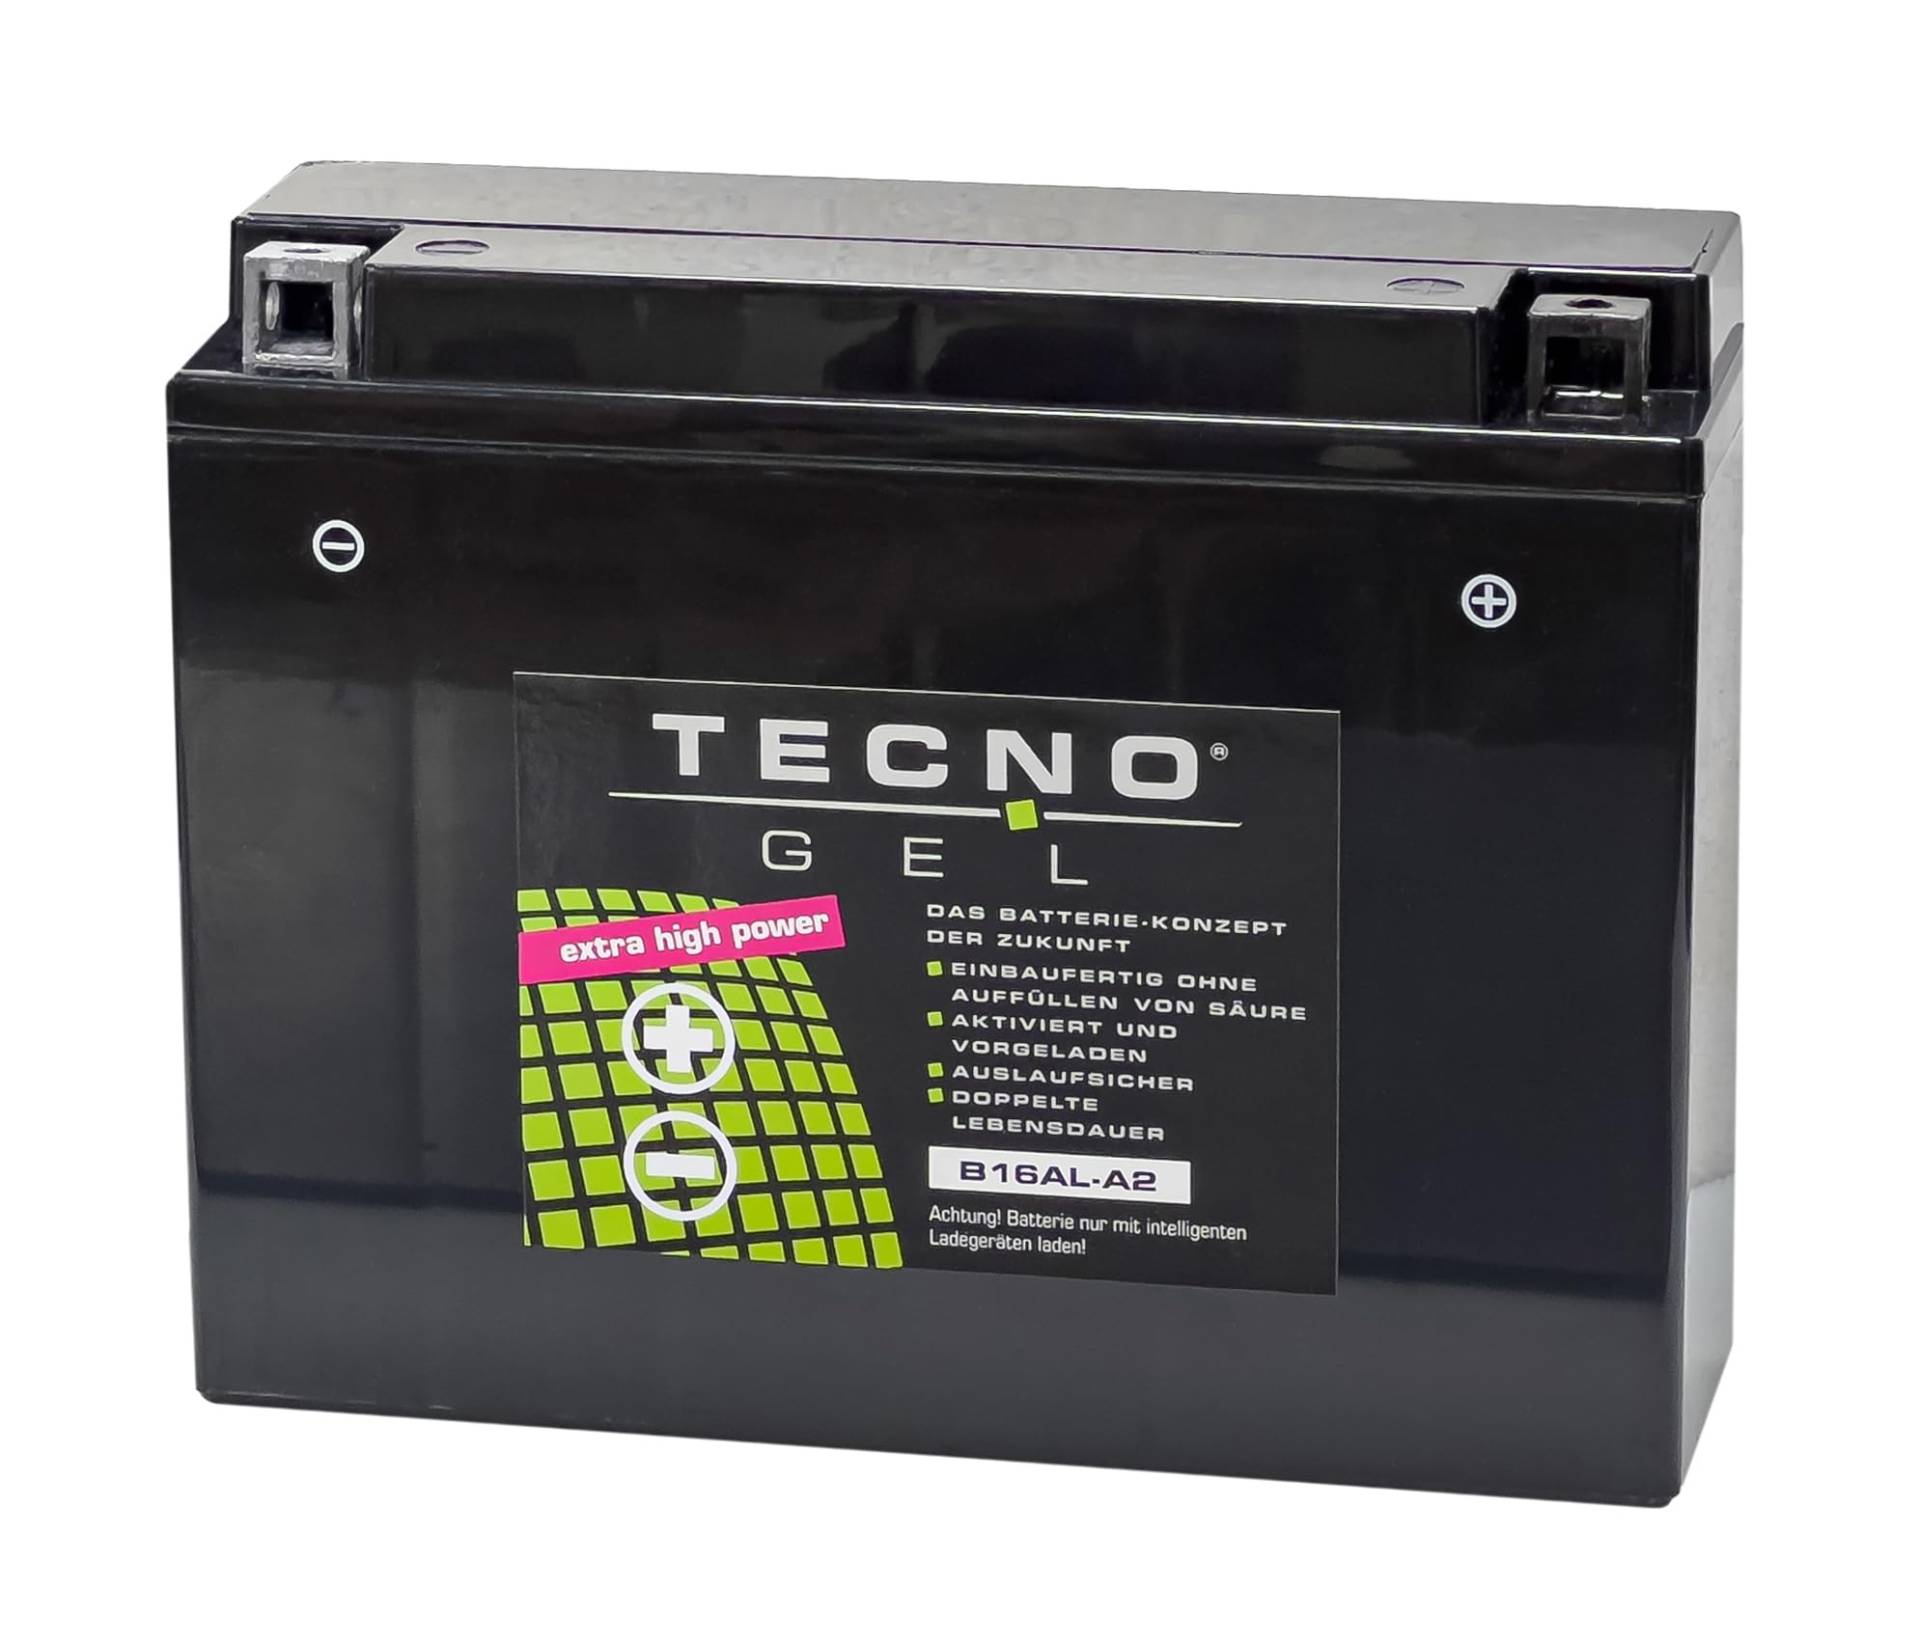 TECNO-GEL Motorrad-Batterie für YB16AL-A2 für DUCATI Monster 600/750/900 alle 1993-2000, 12V Gel-Batterie 16Ah, 205x70x162 mm von Wirth-Federn